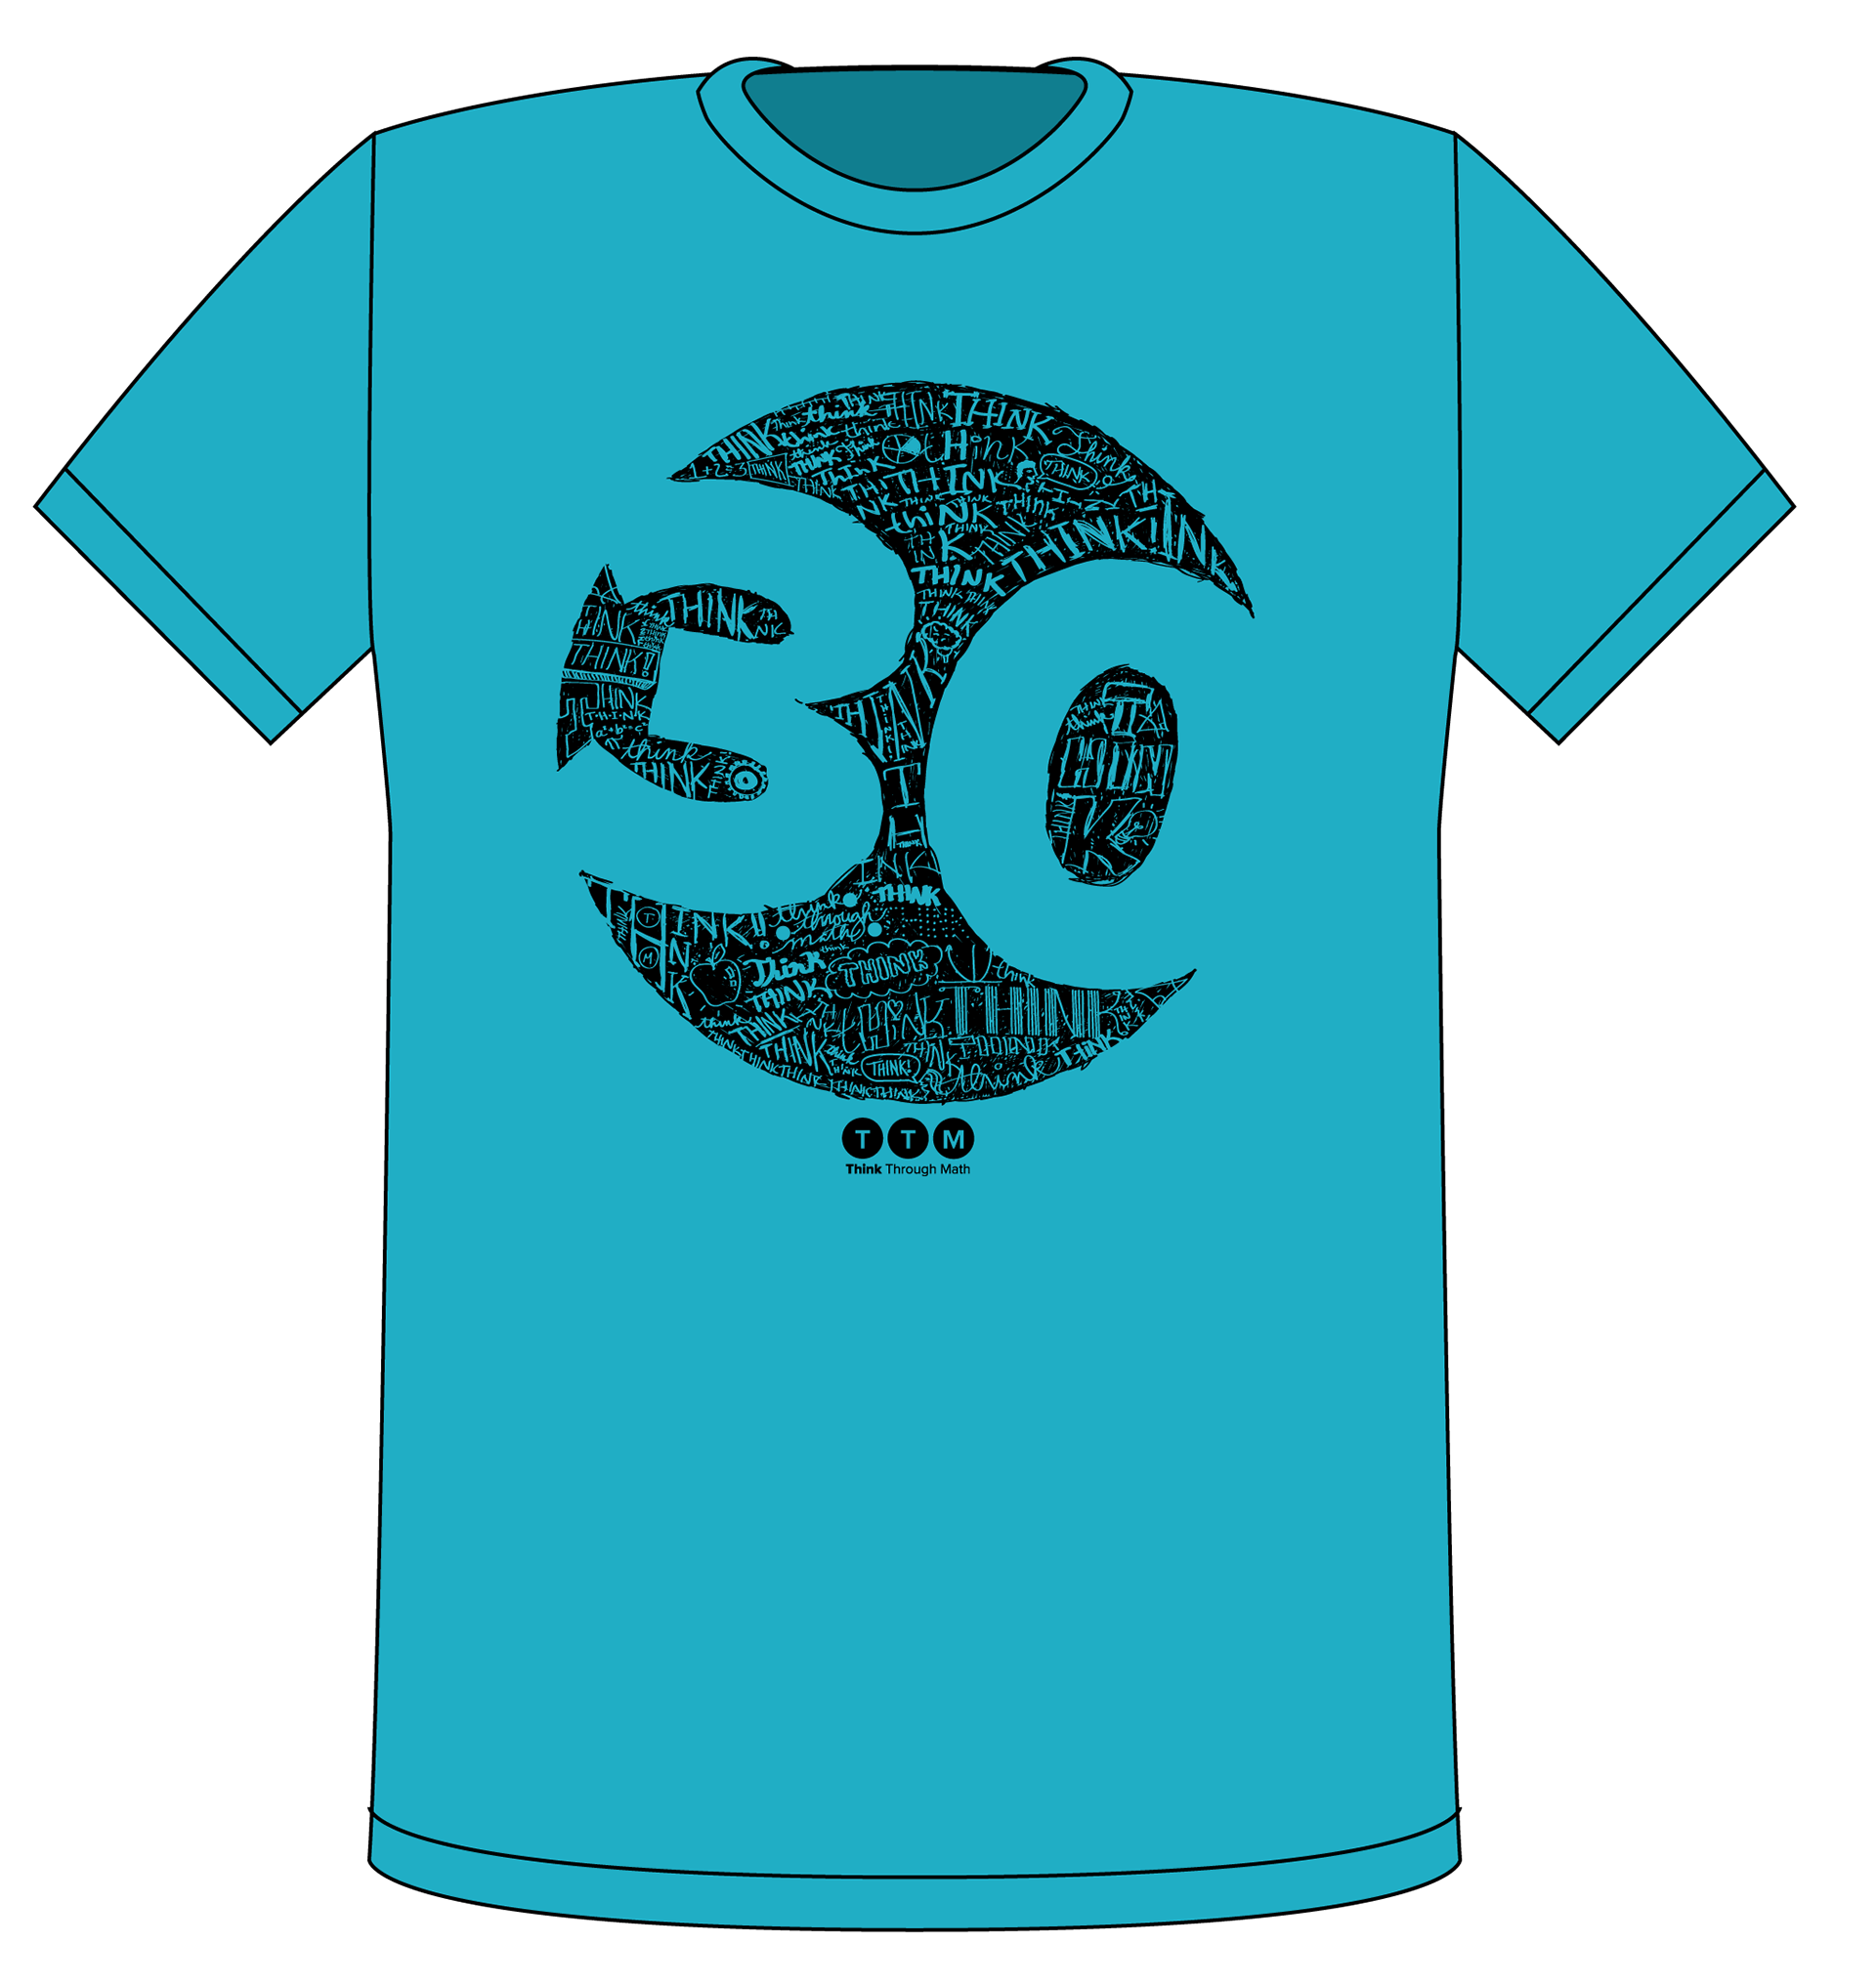 Синяя футболка с логотипом. Принты для футболок PNG. Синяя футболка макет. Blue Tshirt Design. Think sale